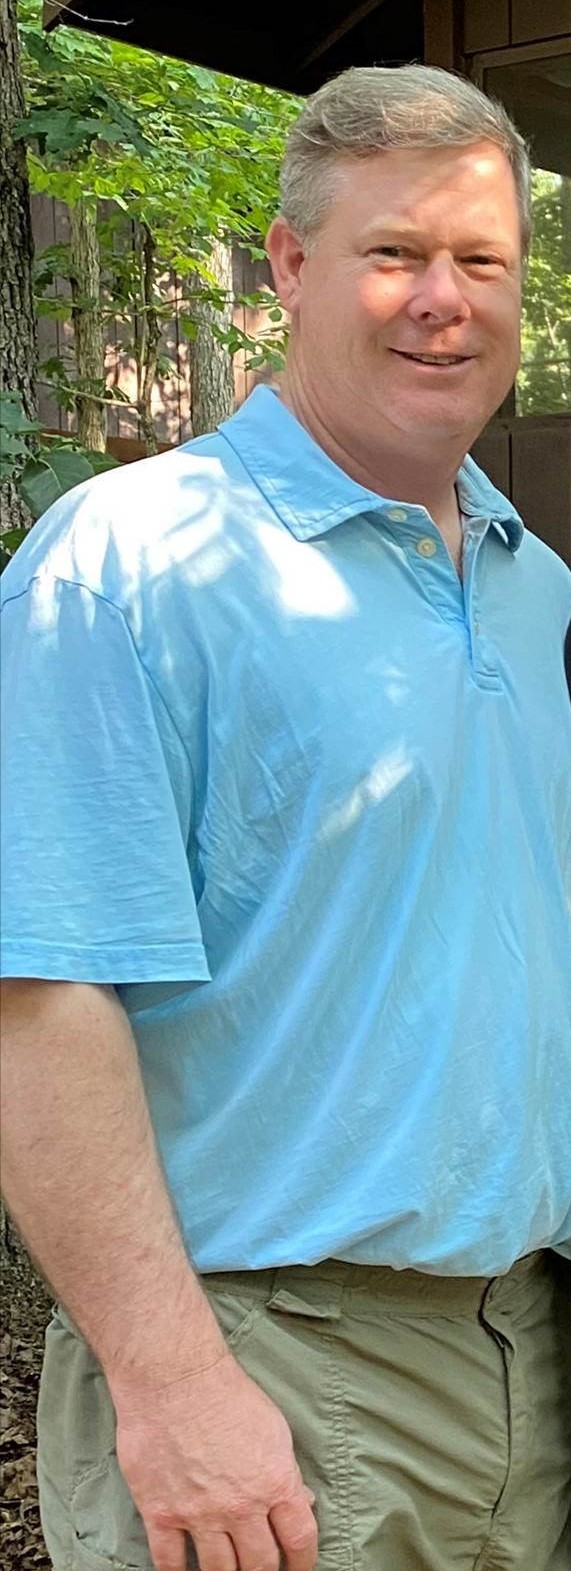 A man in a blue shirt standing outdoors